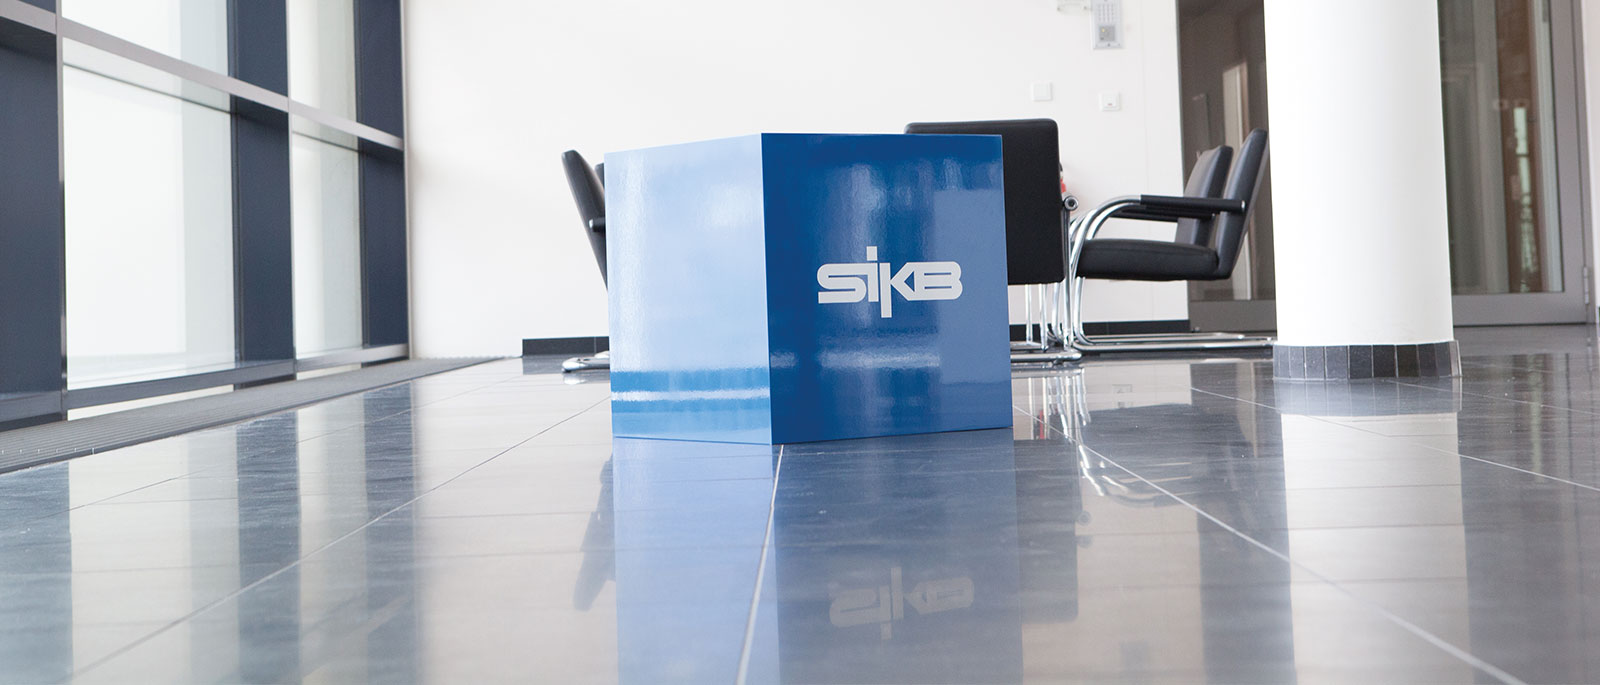 Würfel mit SIKB Logo im Gebäude